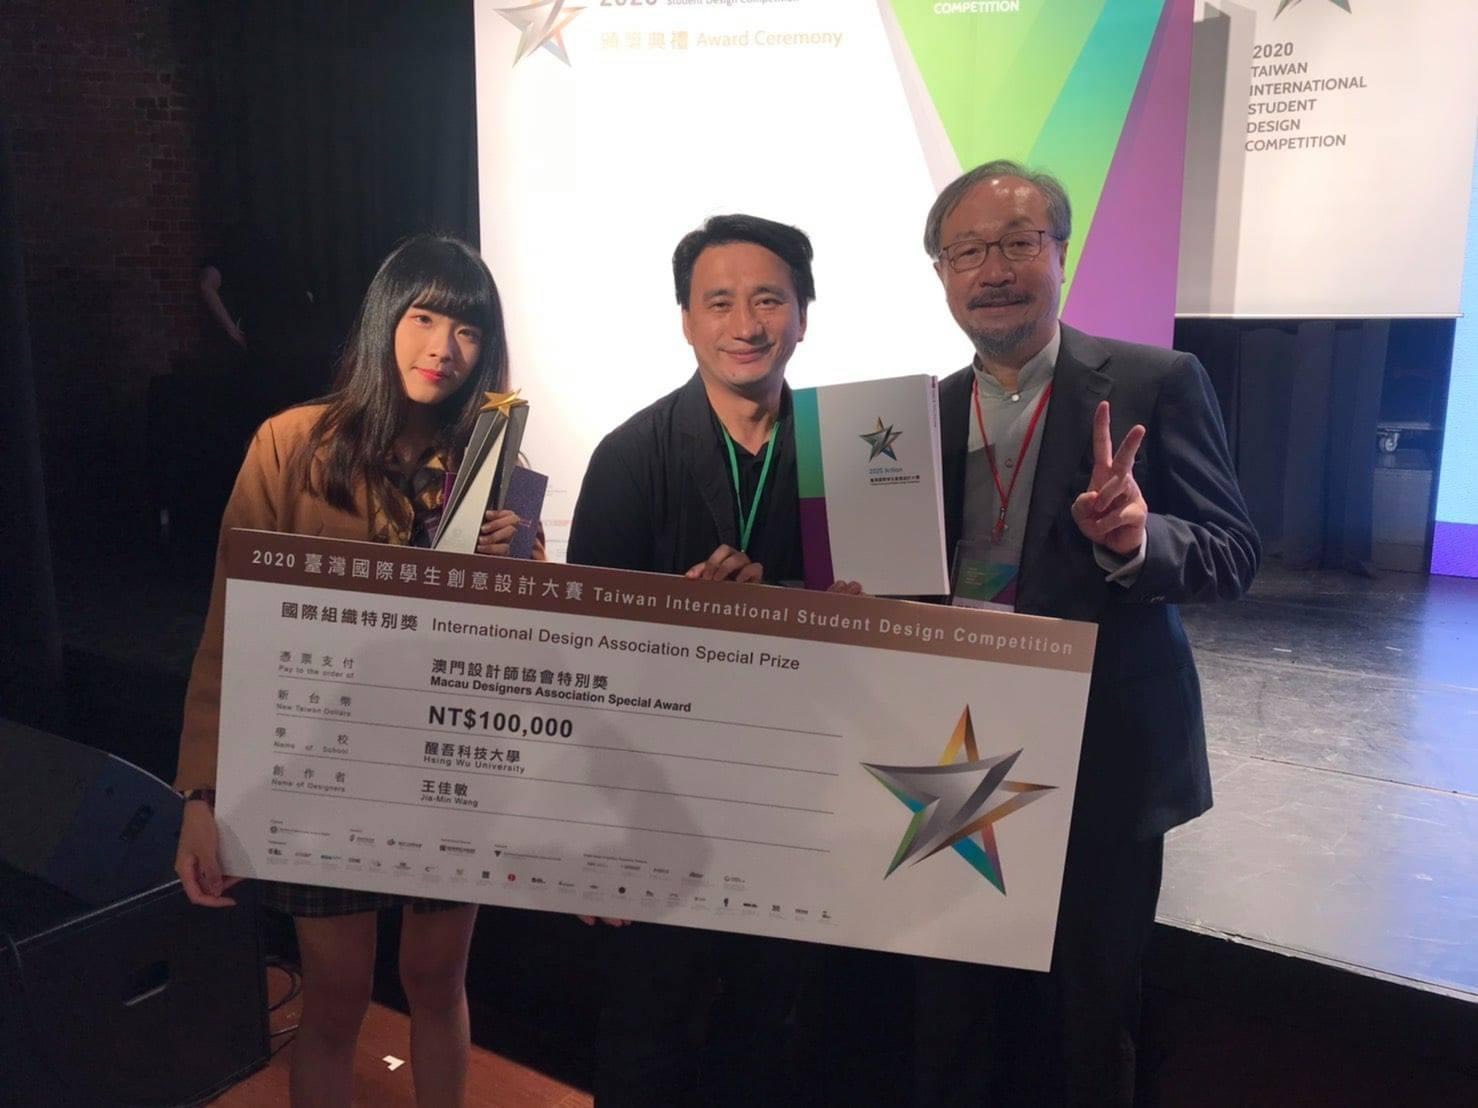 醒吾科技大學創作品「隱形暴力」榮獲「2020台灣國際學生創意設計大賽」國際設計組織特別獎